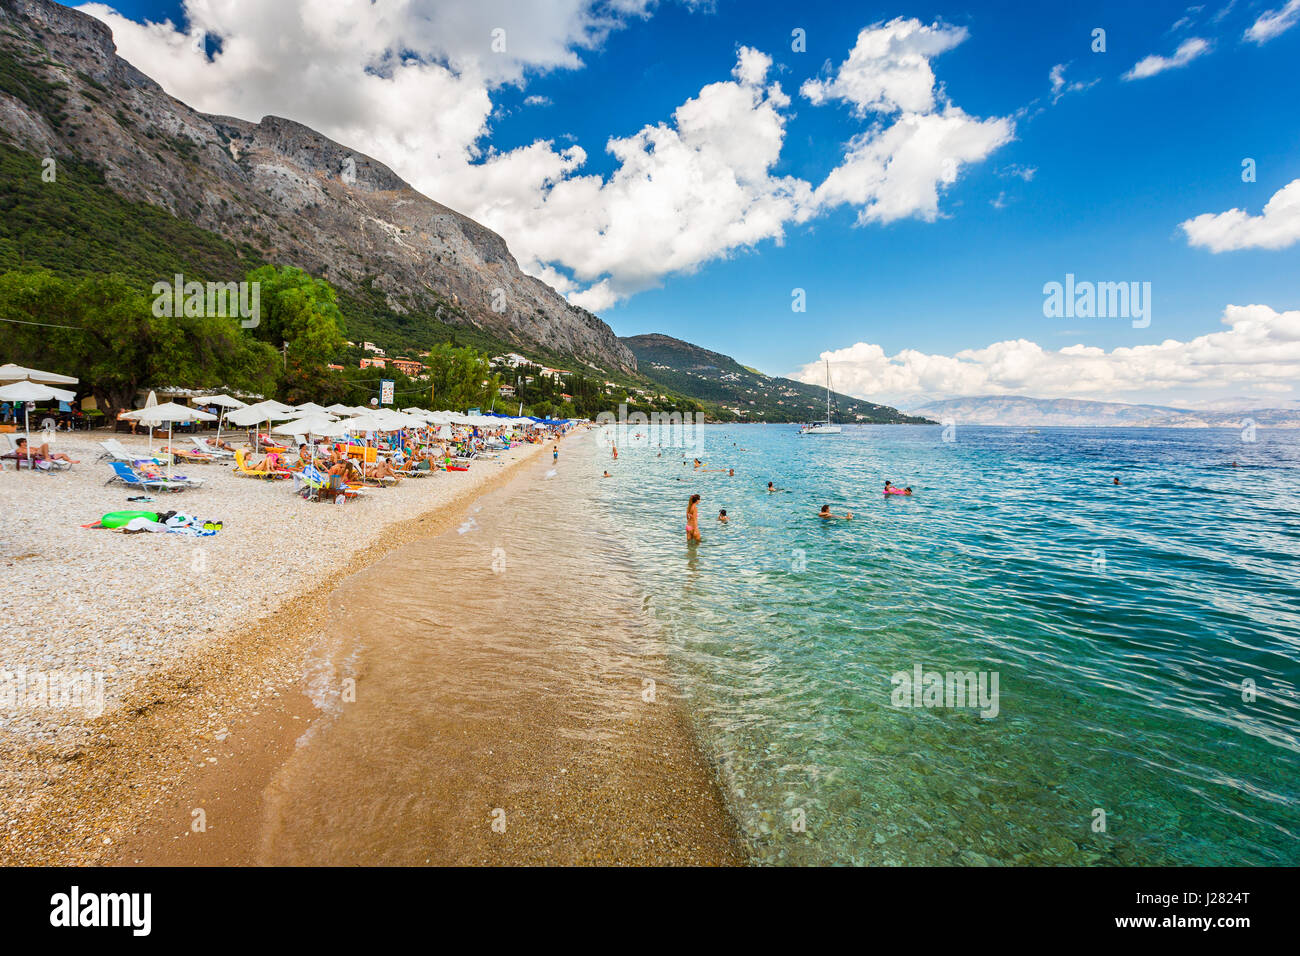 Corfu, Greece -August 20, 2015: Beautiful beach in Barbati on Corfu, tourists enjoying a nice summer day at the beach. Kerkyra (Corfu), Greece Stock Photo